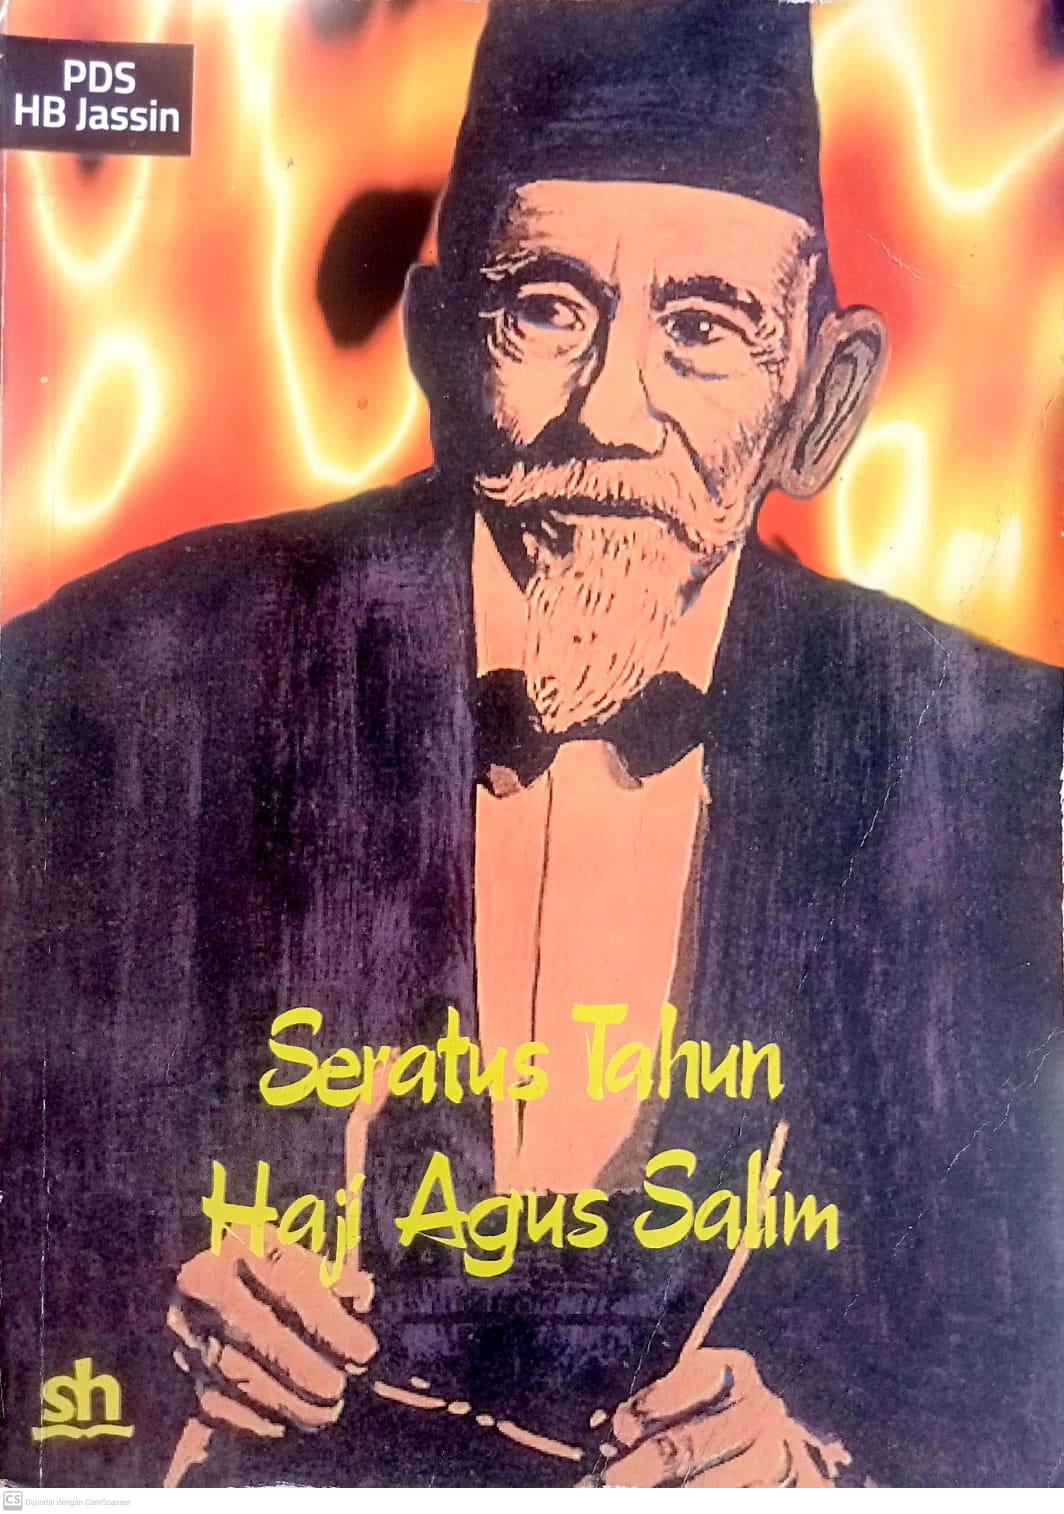 Seratus tahun Haji Agus Salim